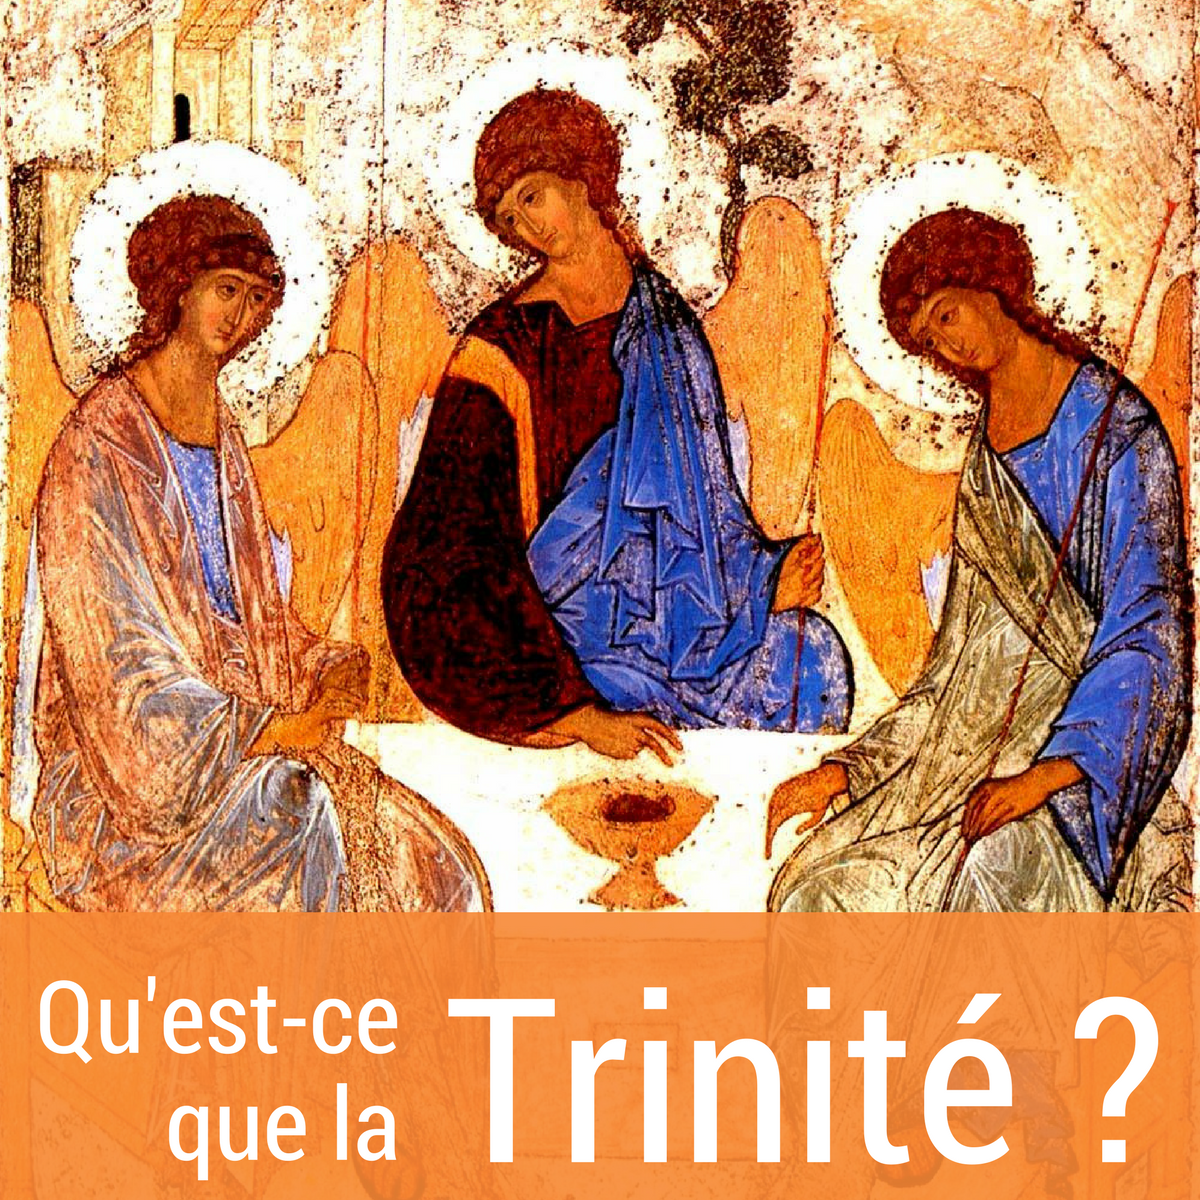 Conférence sur la Trinité au monastère de Vandoeuvre (54) le 18 novembre